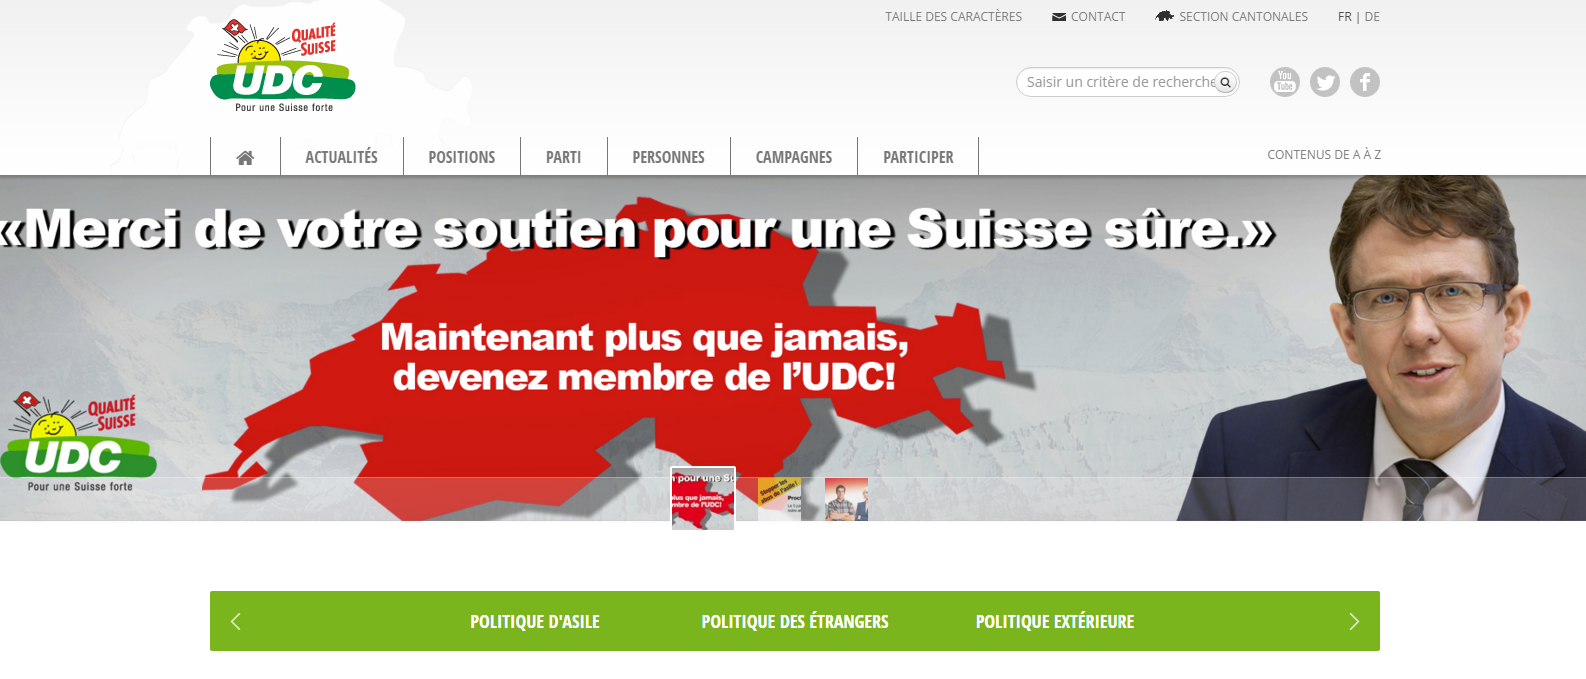 Le site internet de l'UDC Suisse aurait été hacké.